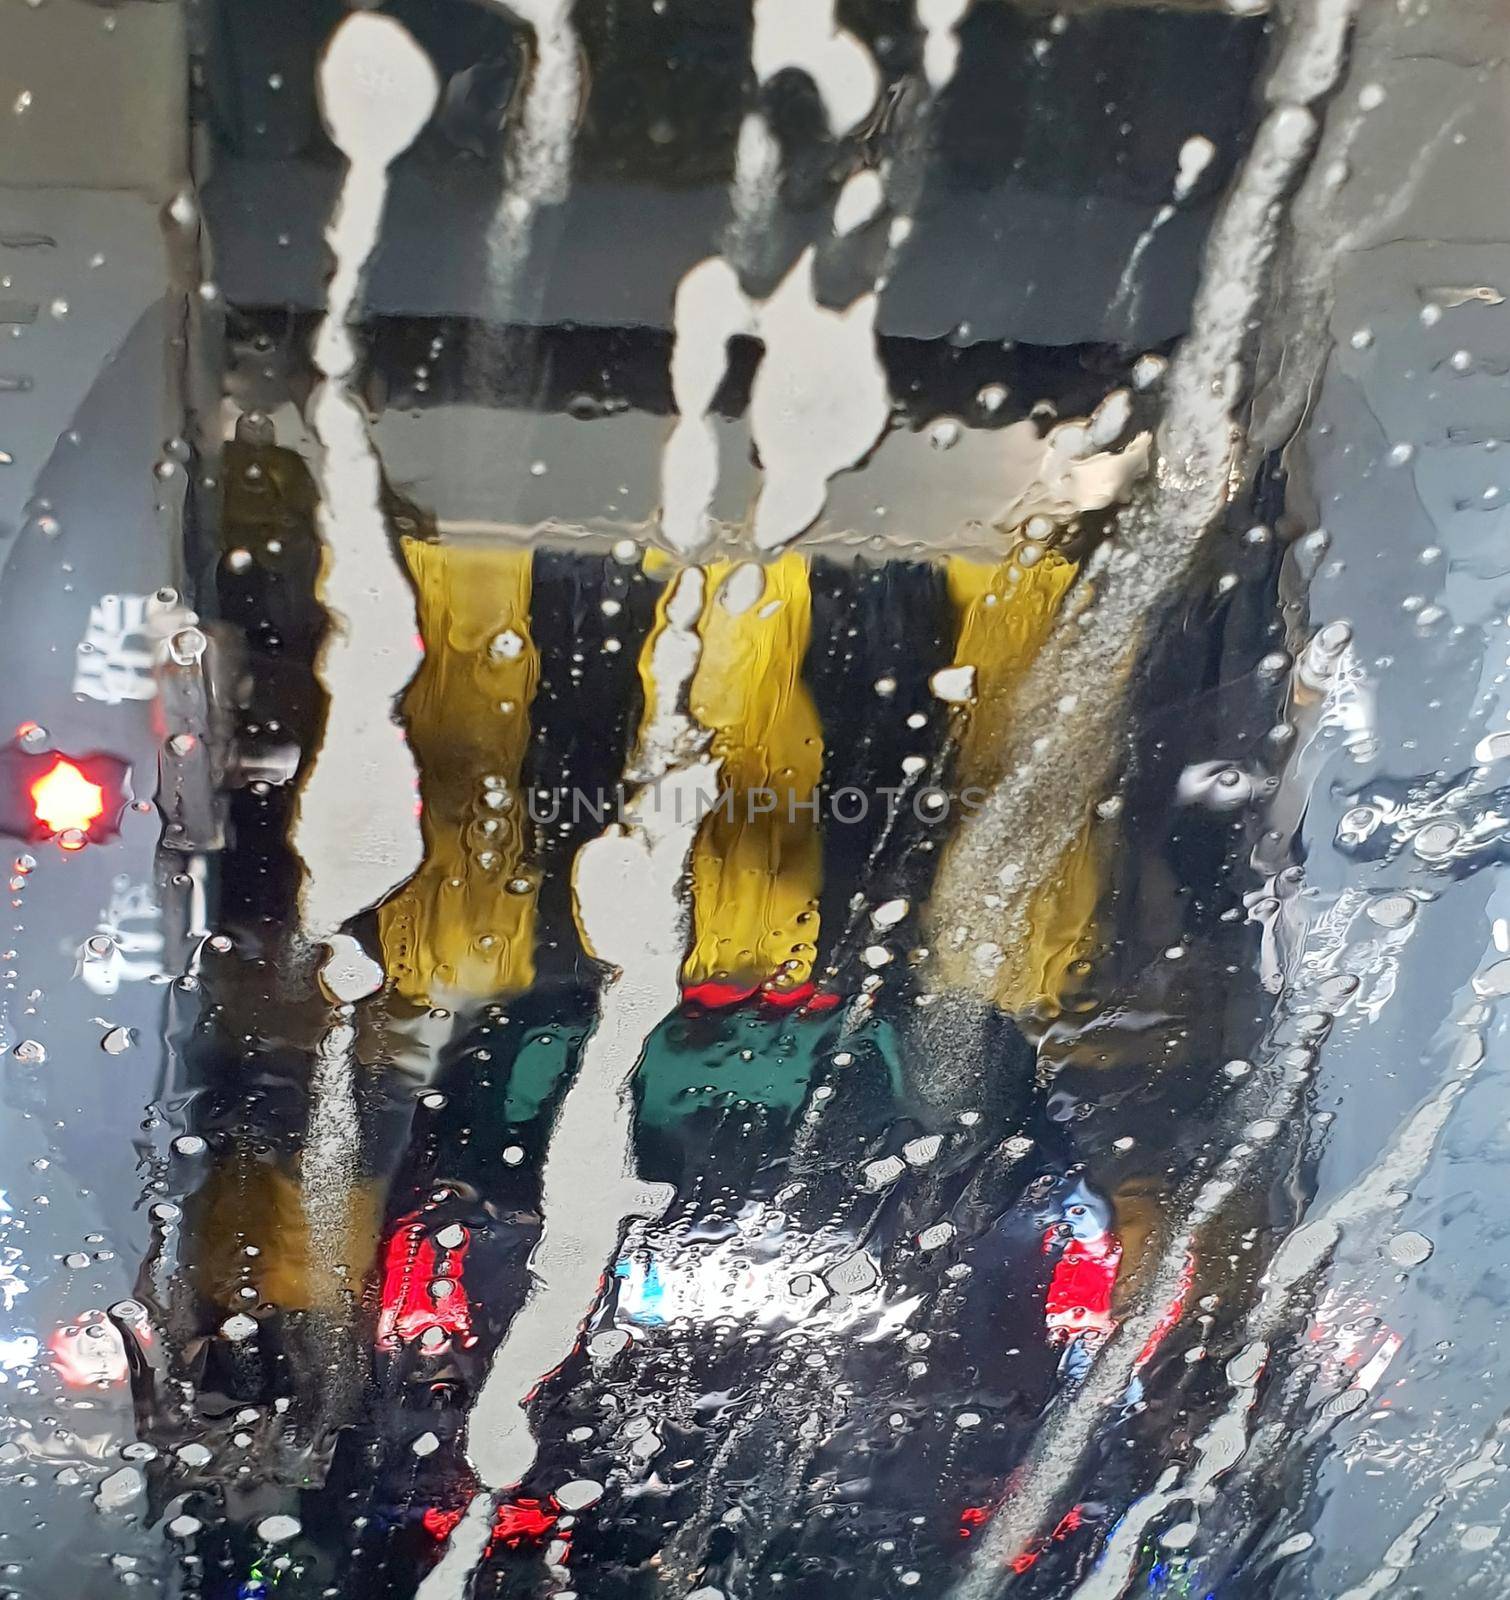 Washing a car in a car wash by hamik